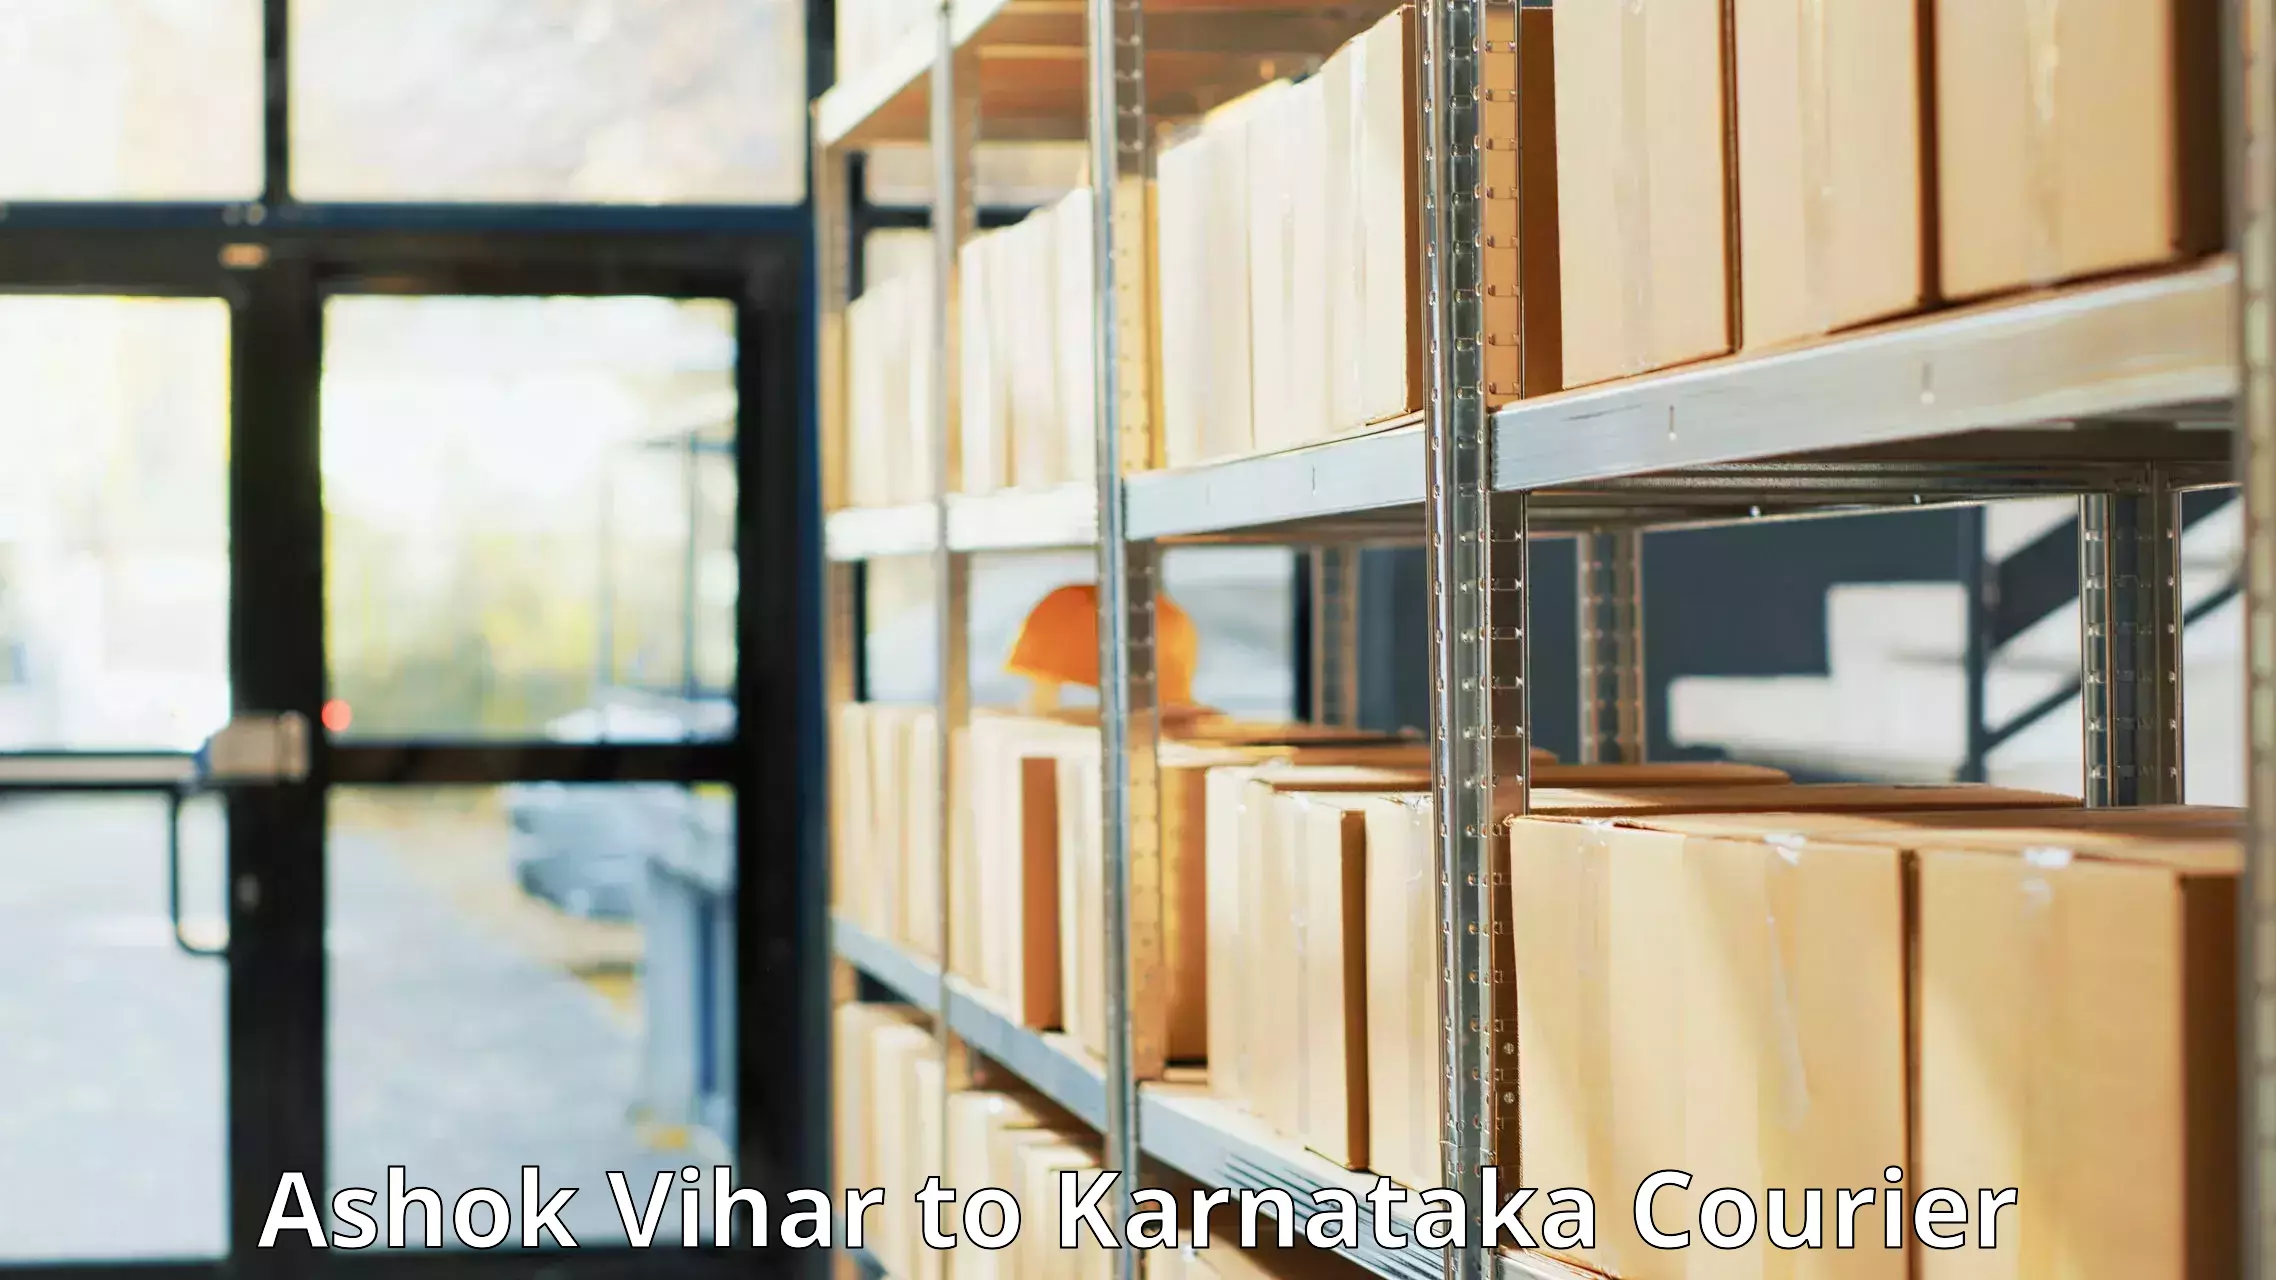 Global courier networks Ashok Vihar to Karnataka